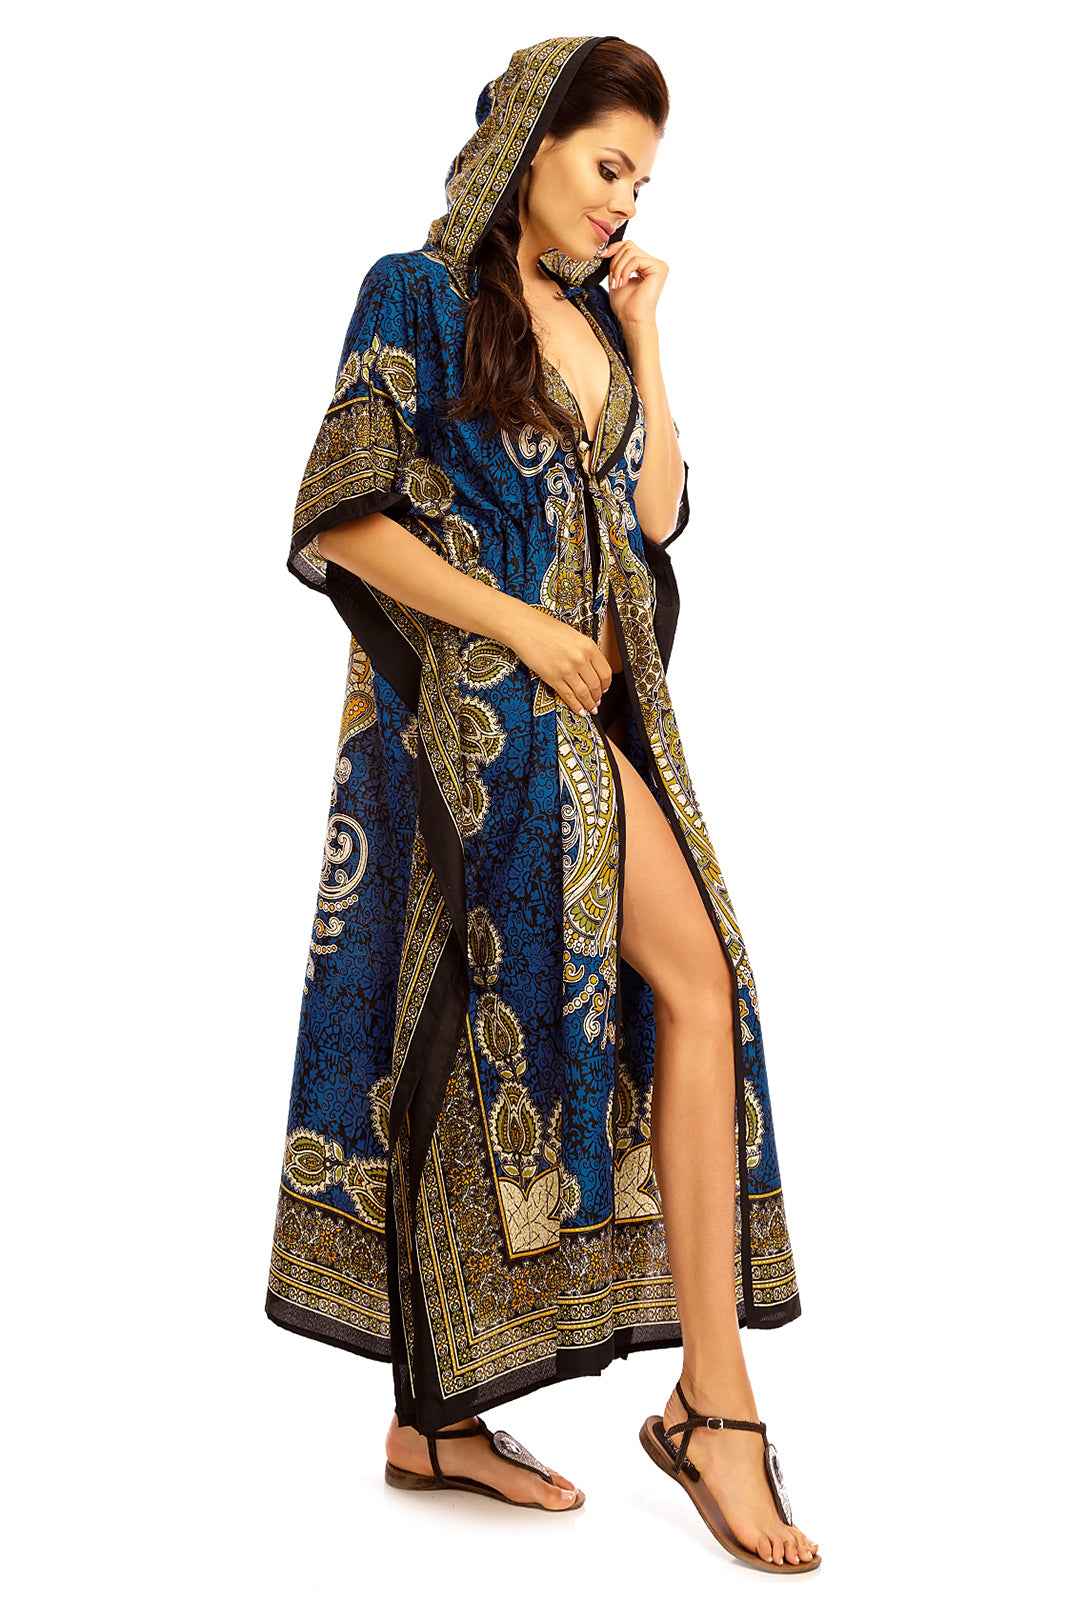 Ladies Hooded Kimono Gown Kaftan in Tribal Print  -Teal - Pack of 12